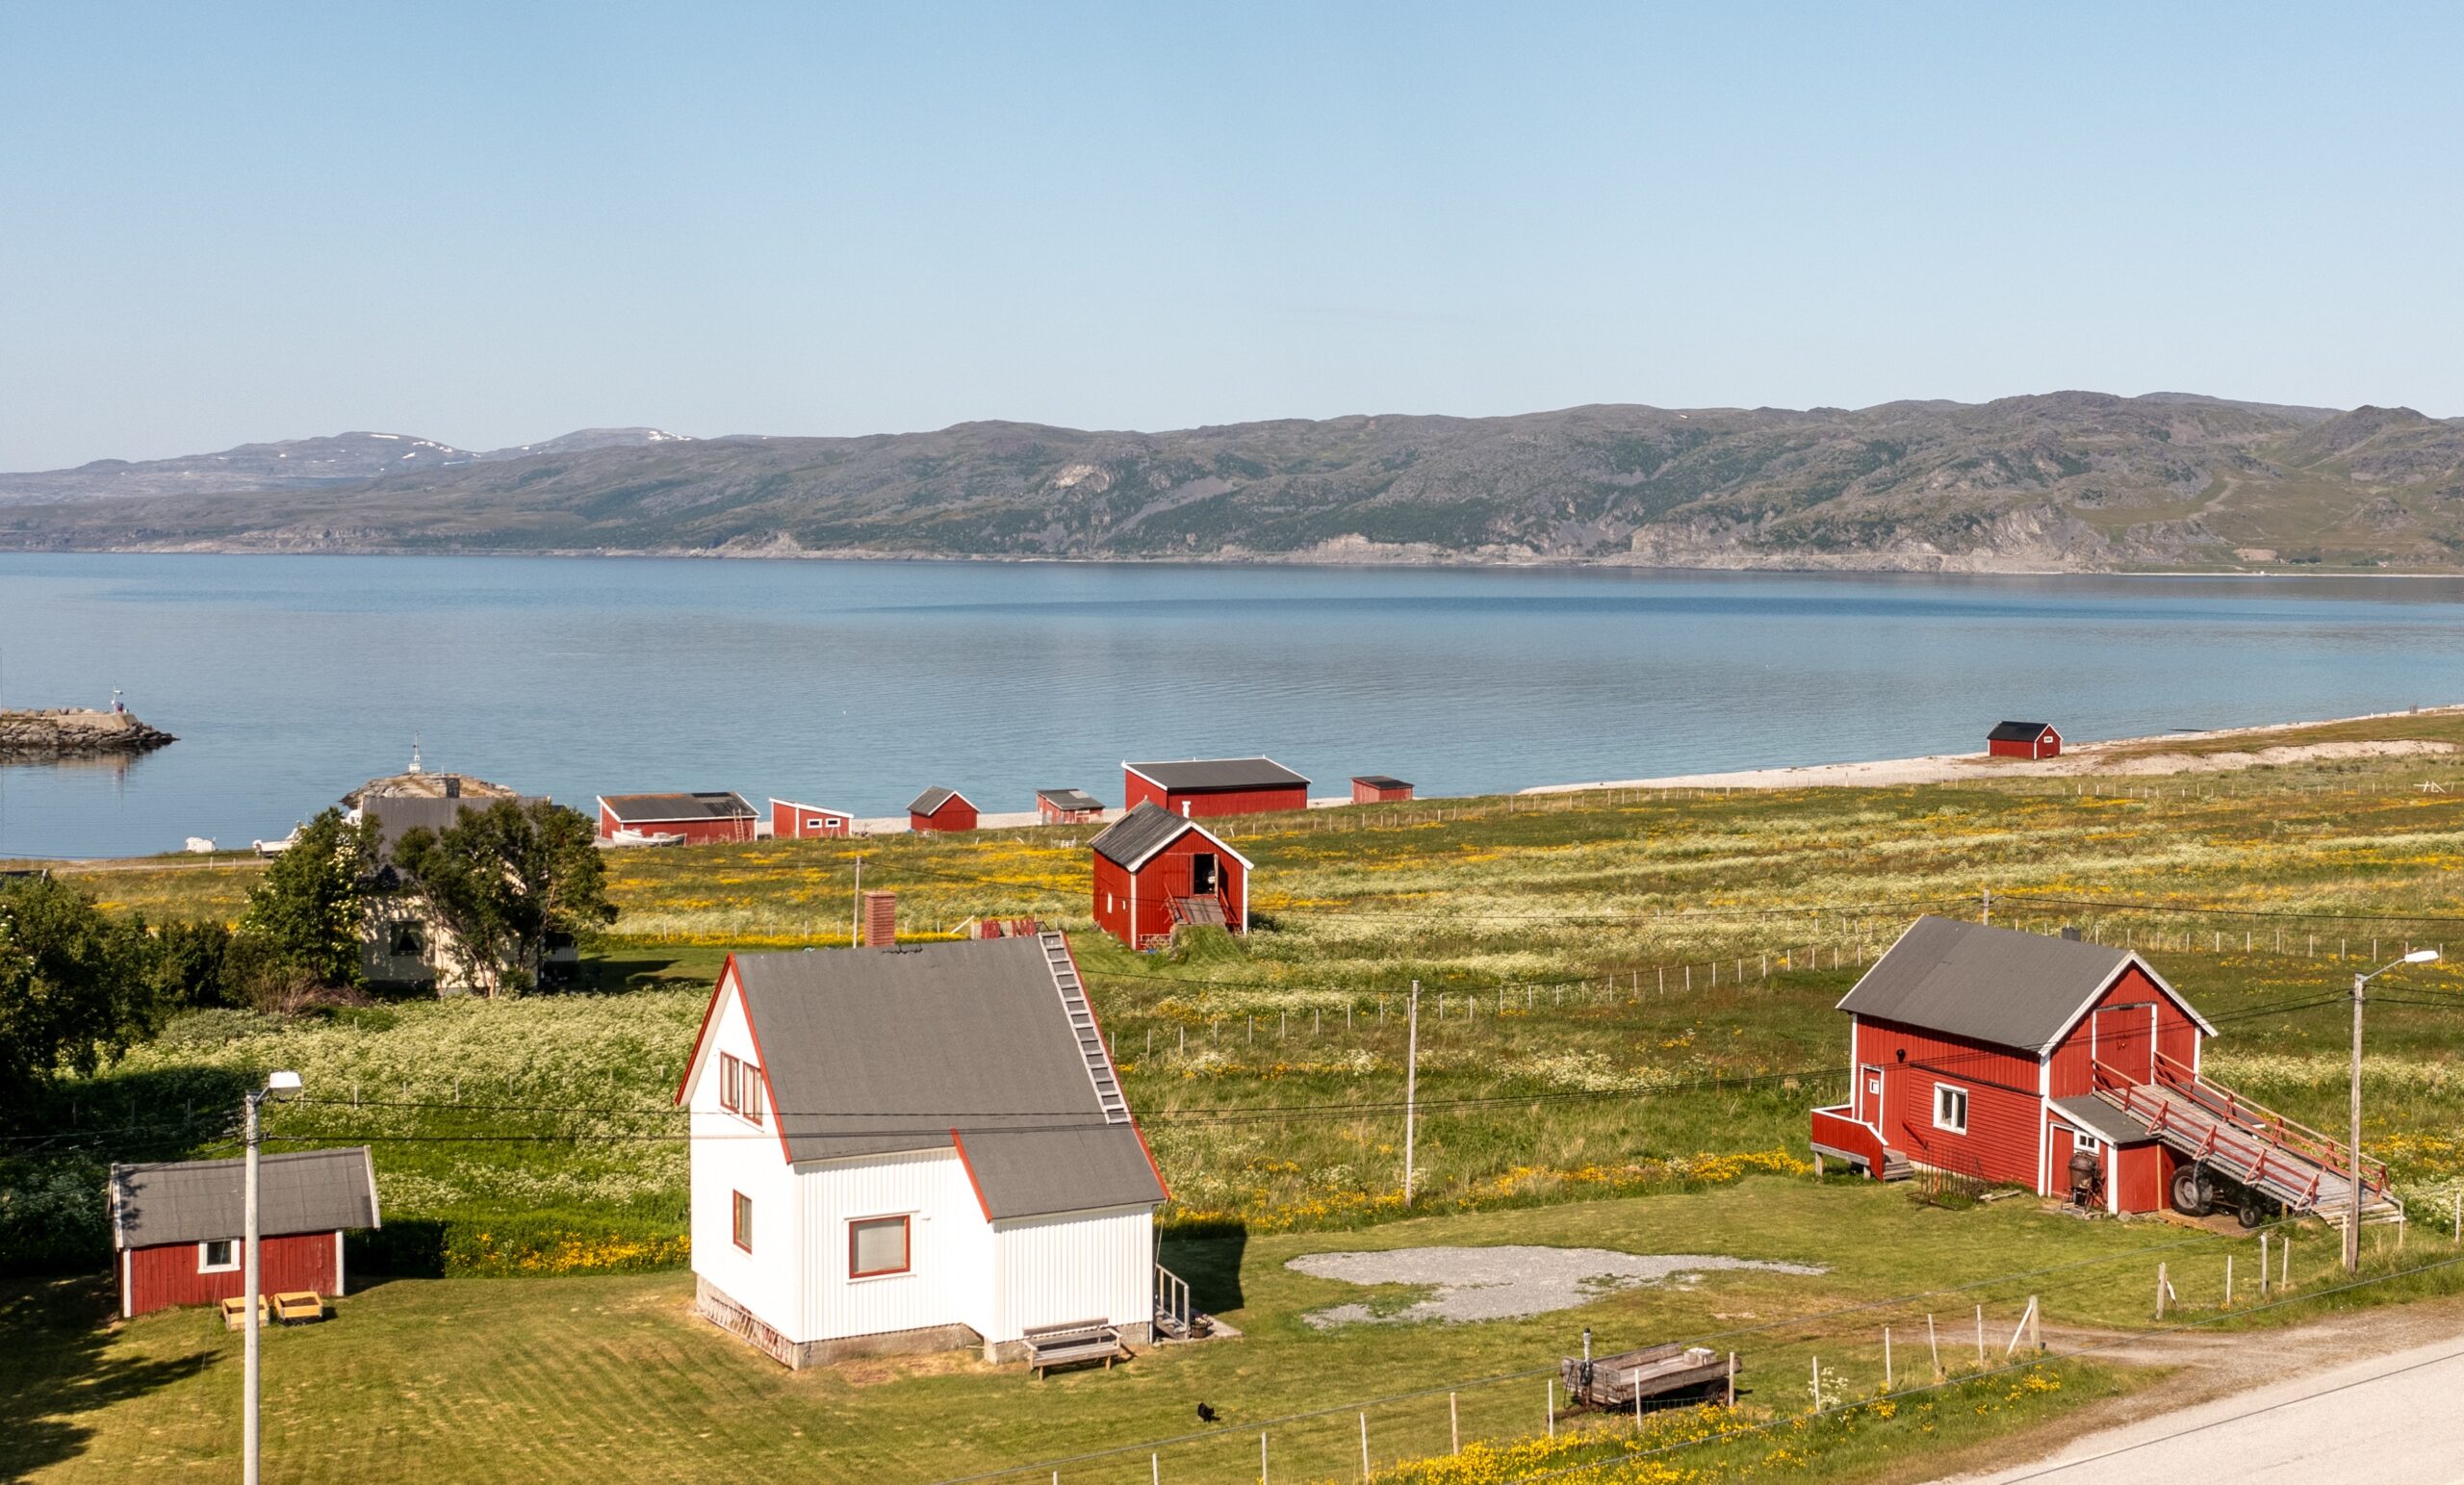 Nillagården, hvitt bolighus, rød fjøs og uthus. I bakgrunnen en annen gård, en rekke røde naust og fjord og fjell. Fint vær